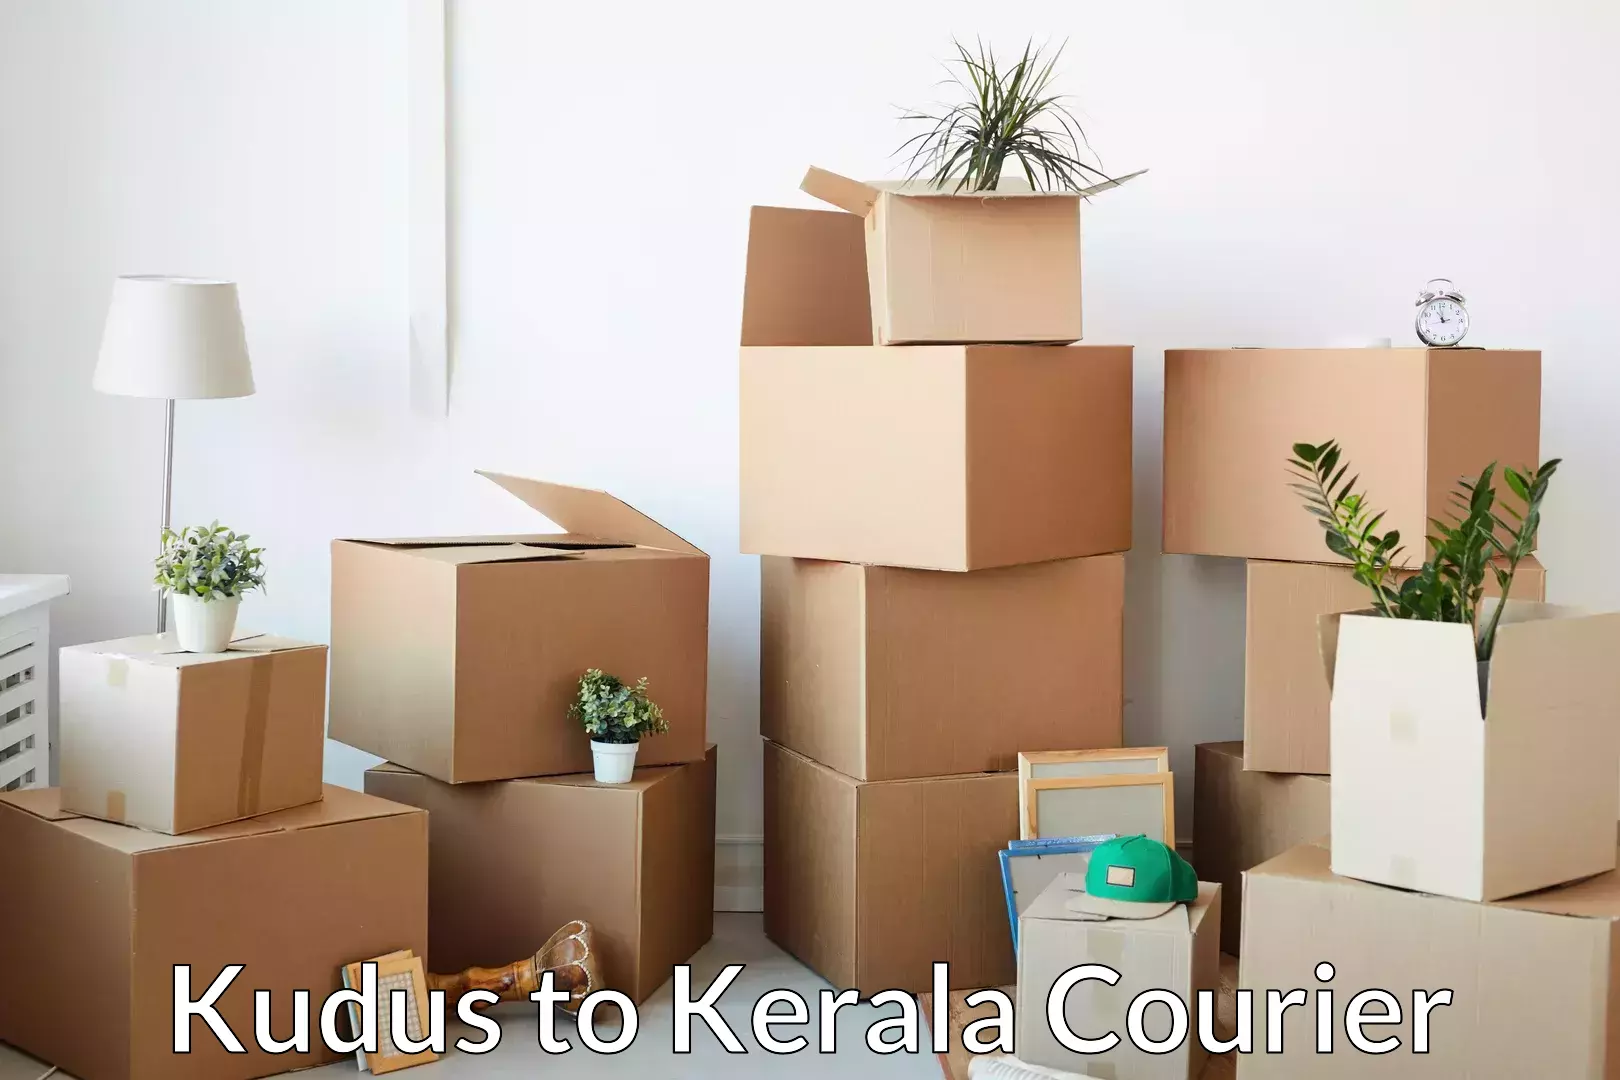 Stress-free household moving Kudus to Ponnani